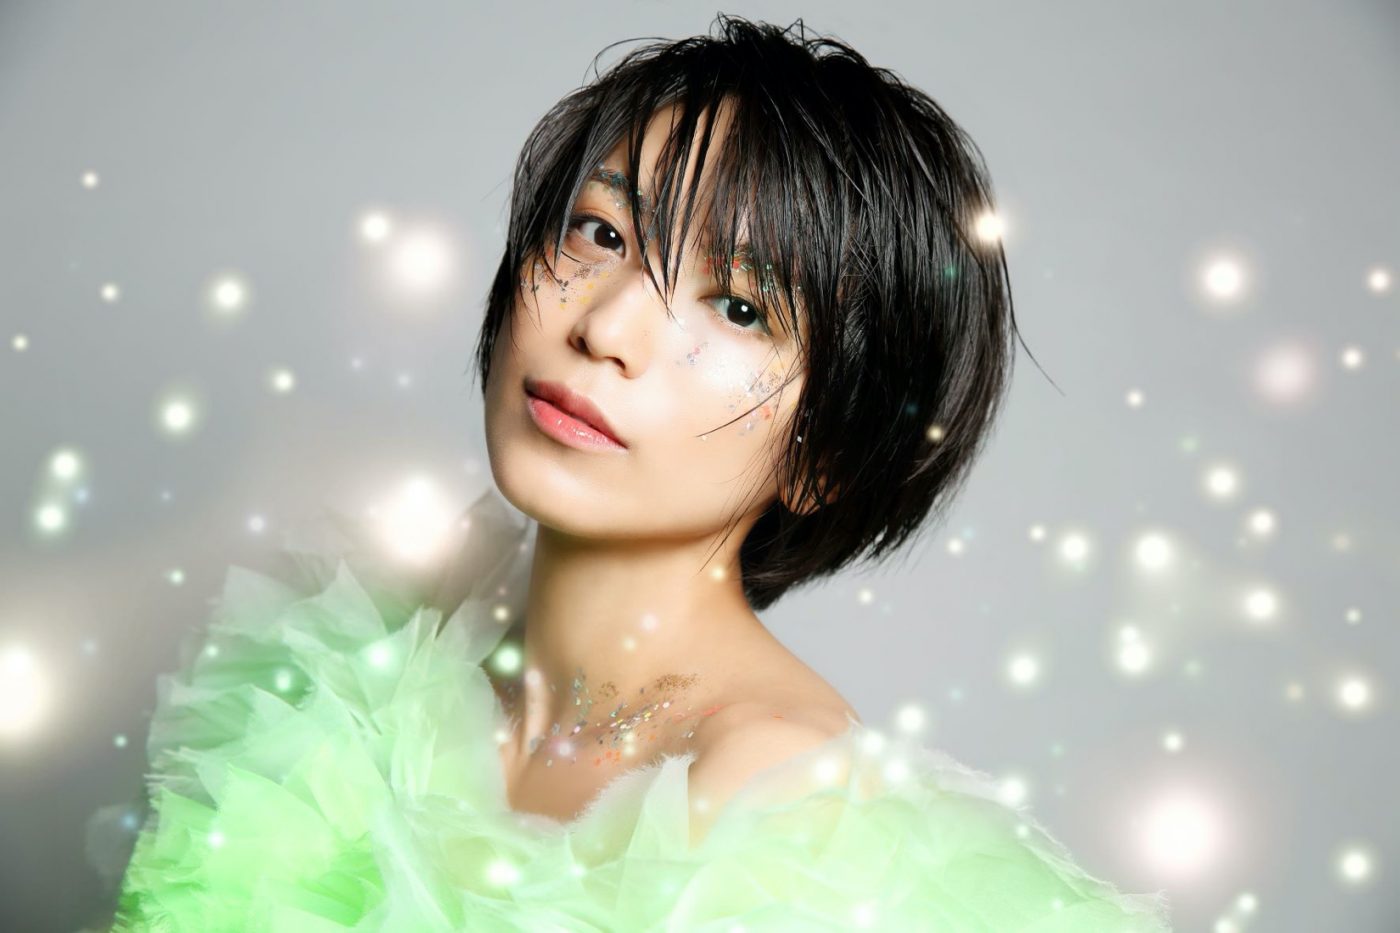 miwa、ニューアルバム『Sparkle』よりリード曲「Sparkle」の先行配信が決定